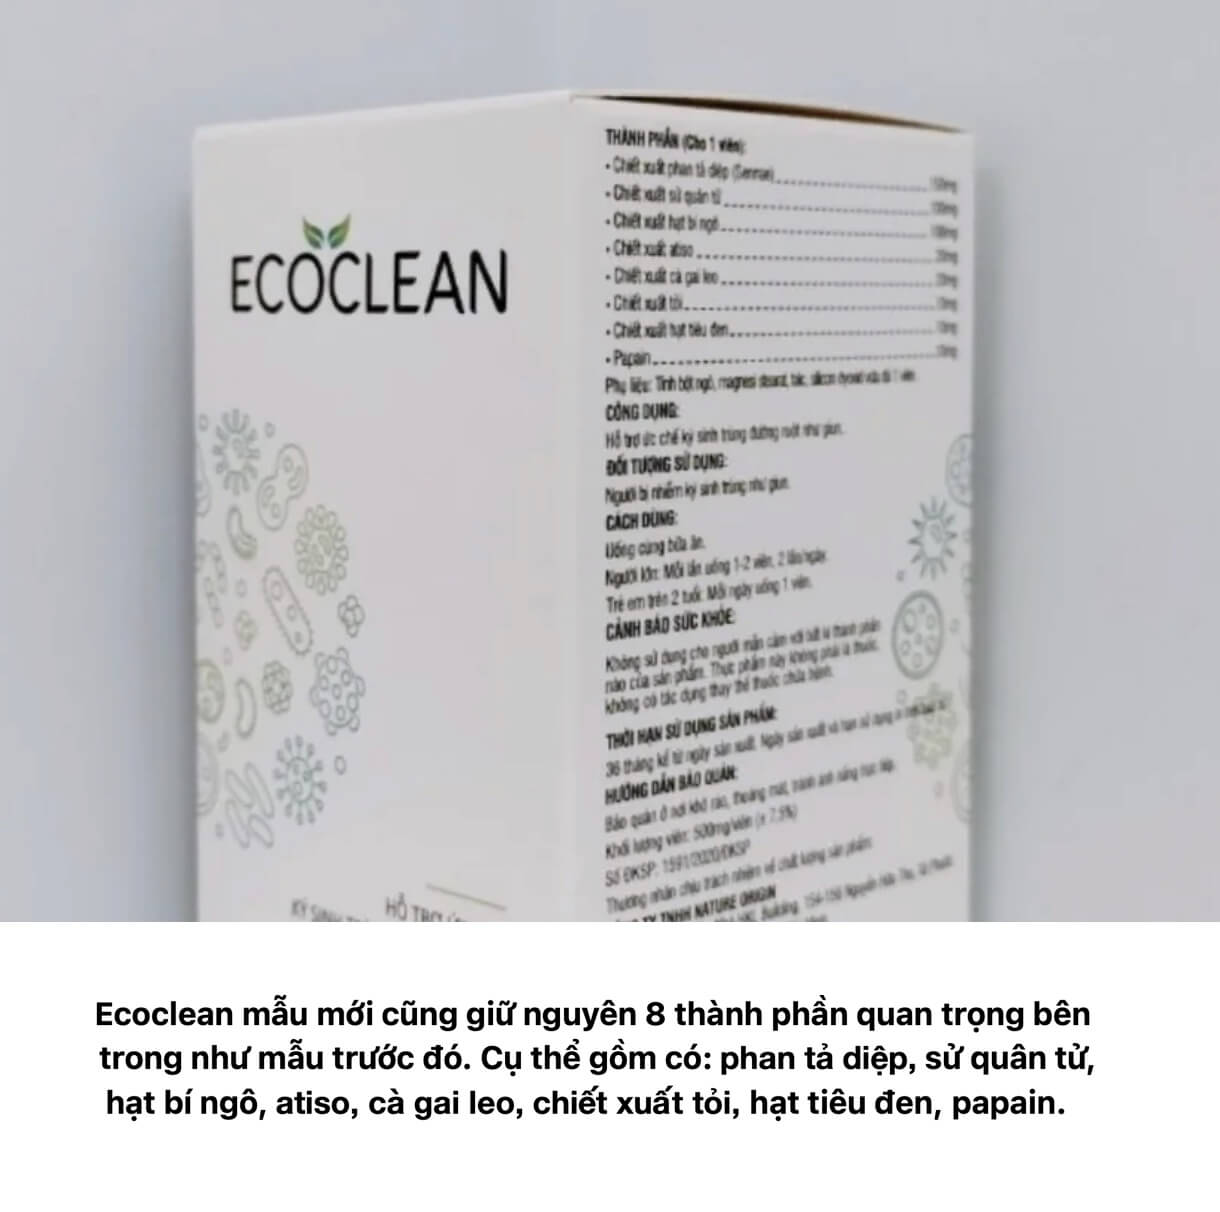 Ecoclean là thuốc gì, có tốt không lừa đảo hình 4